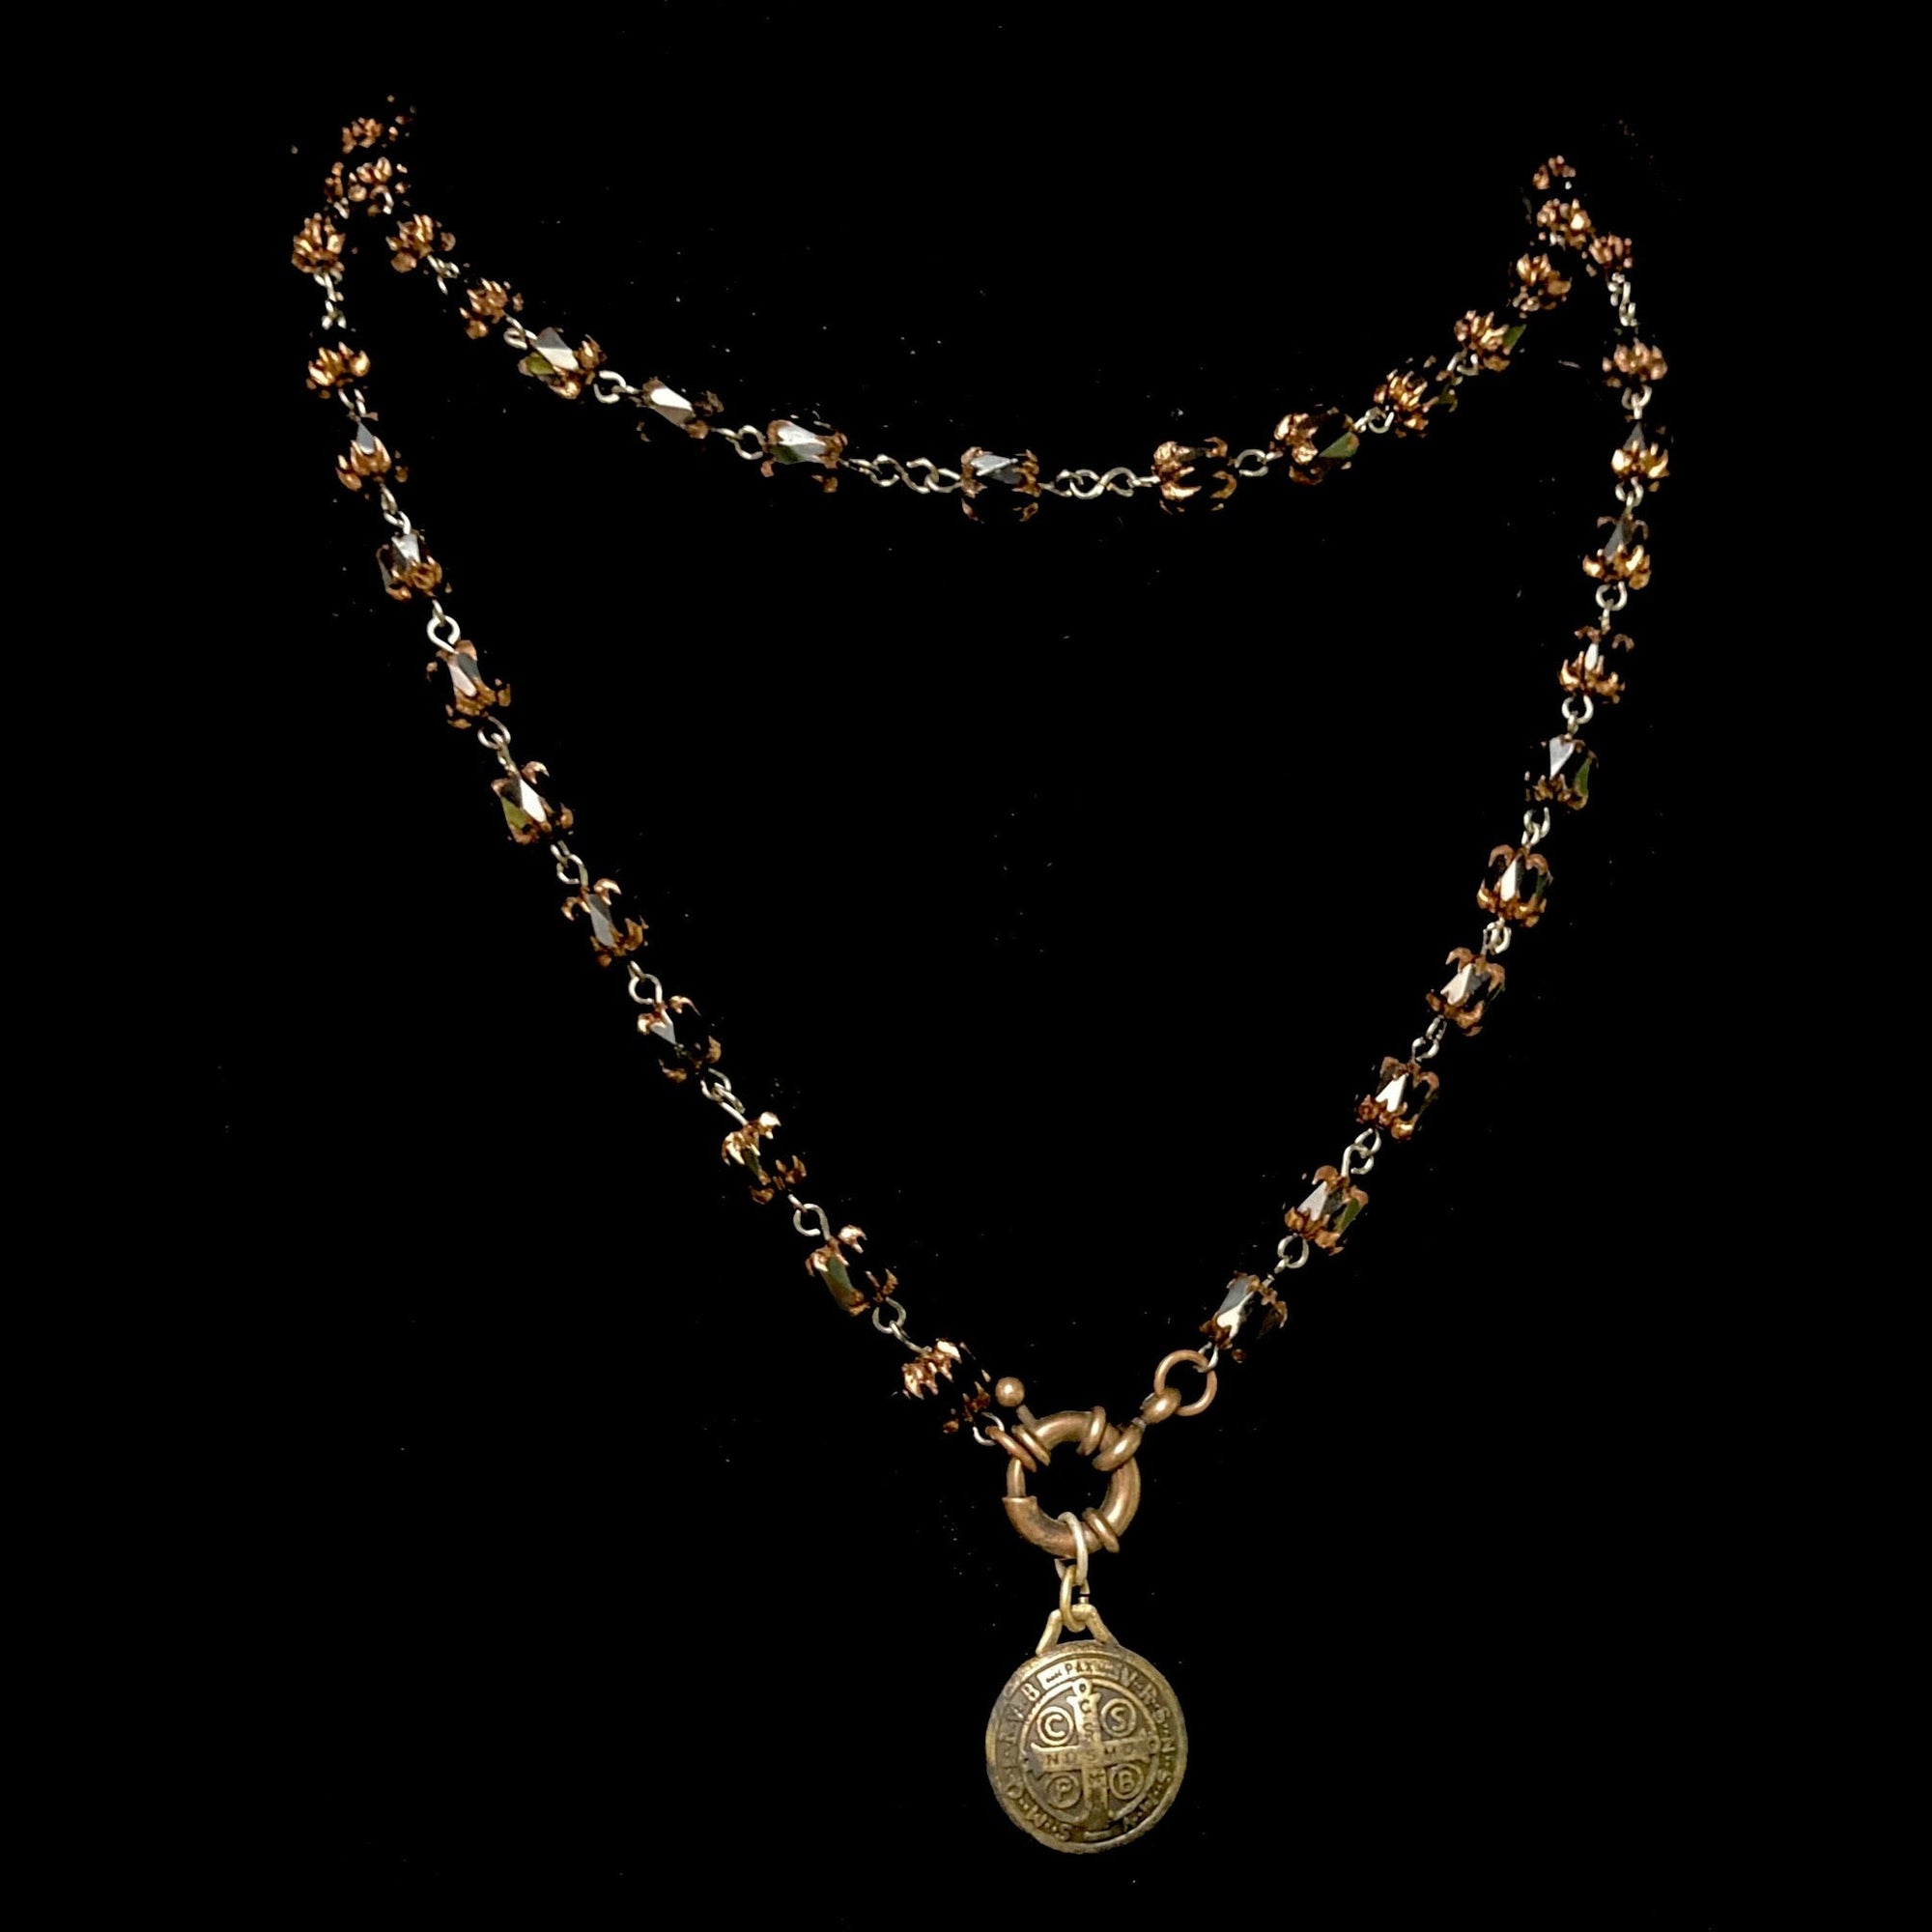 Montserrat Black Jet Cathedral Bead Wrap Necklace / Bracelet